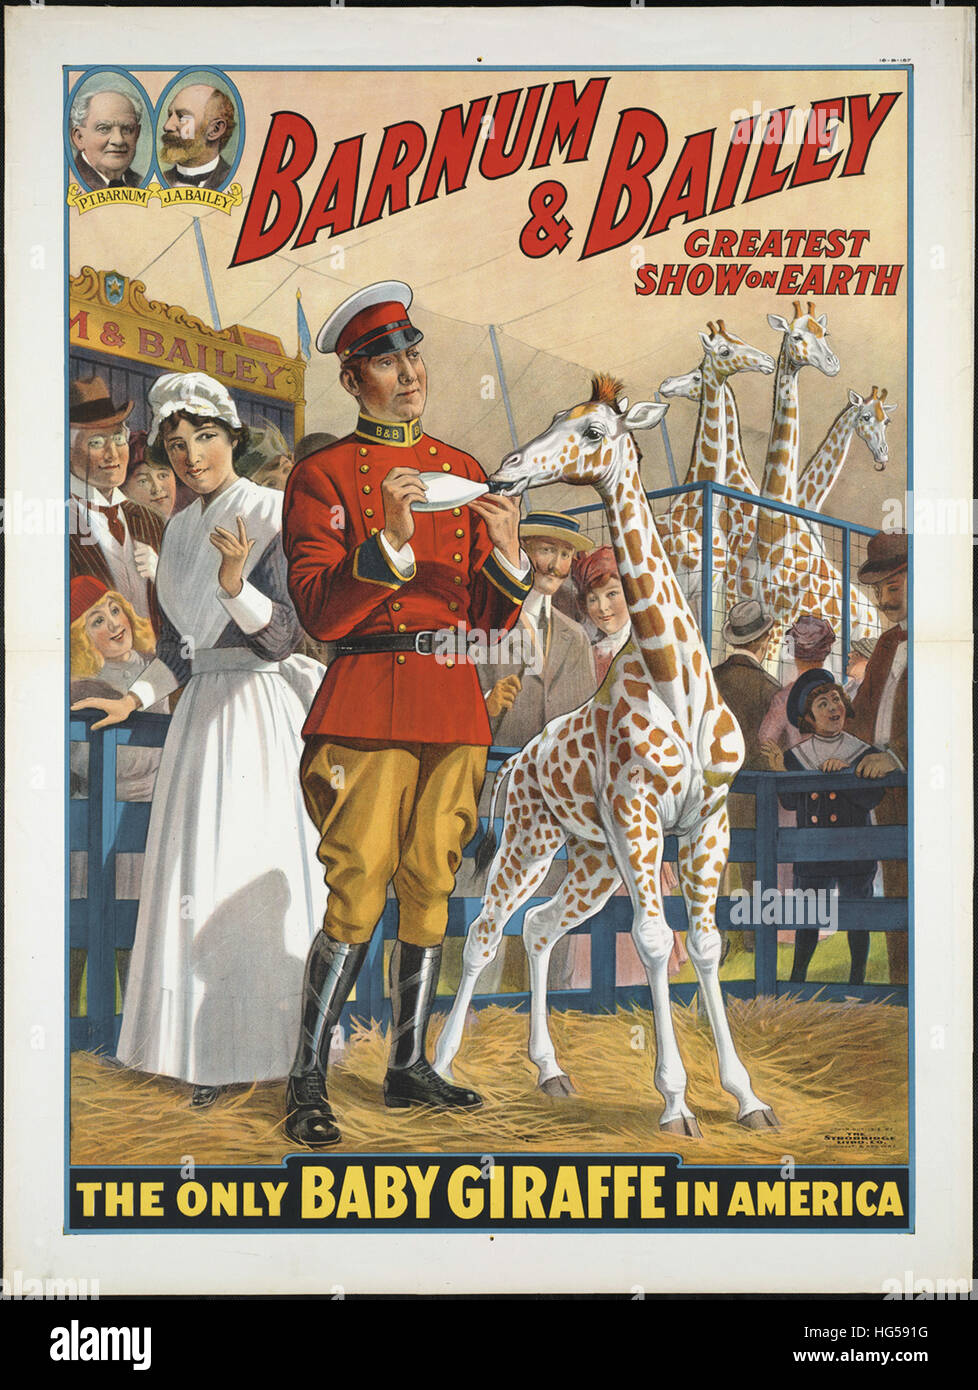 - Cartel de Circo Barnum & Bailey mayor espectáculo de la tierra   El único bebé jirafa en América Foto de stock